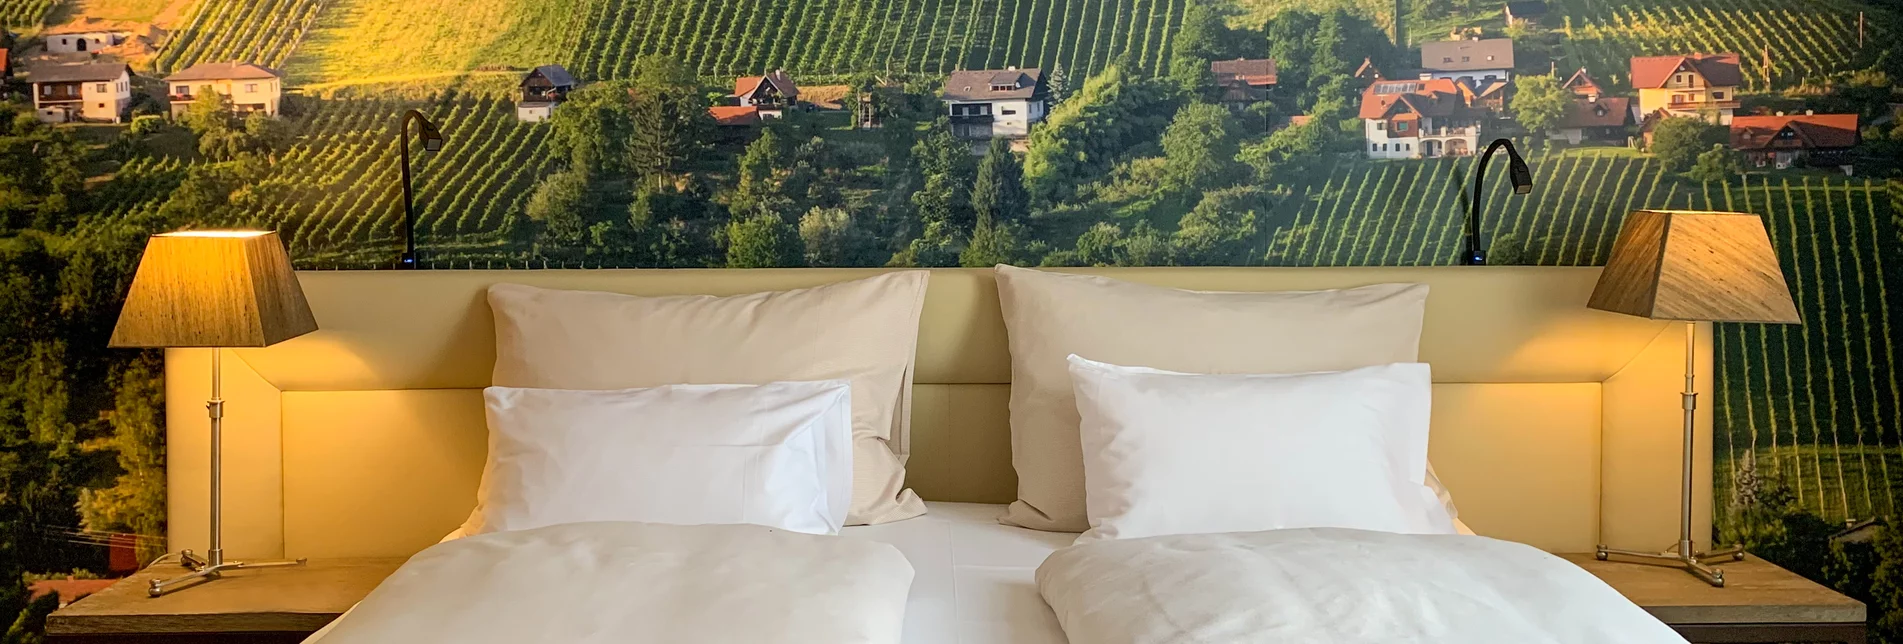 Doppelzimmer mit Weingärten von Hochgrail als Kulisse | © Stainzerhof